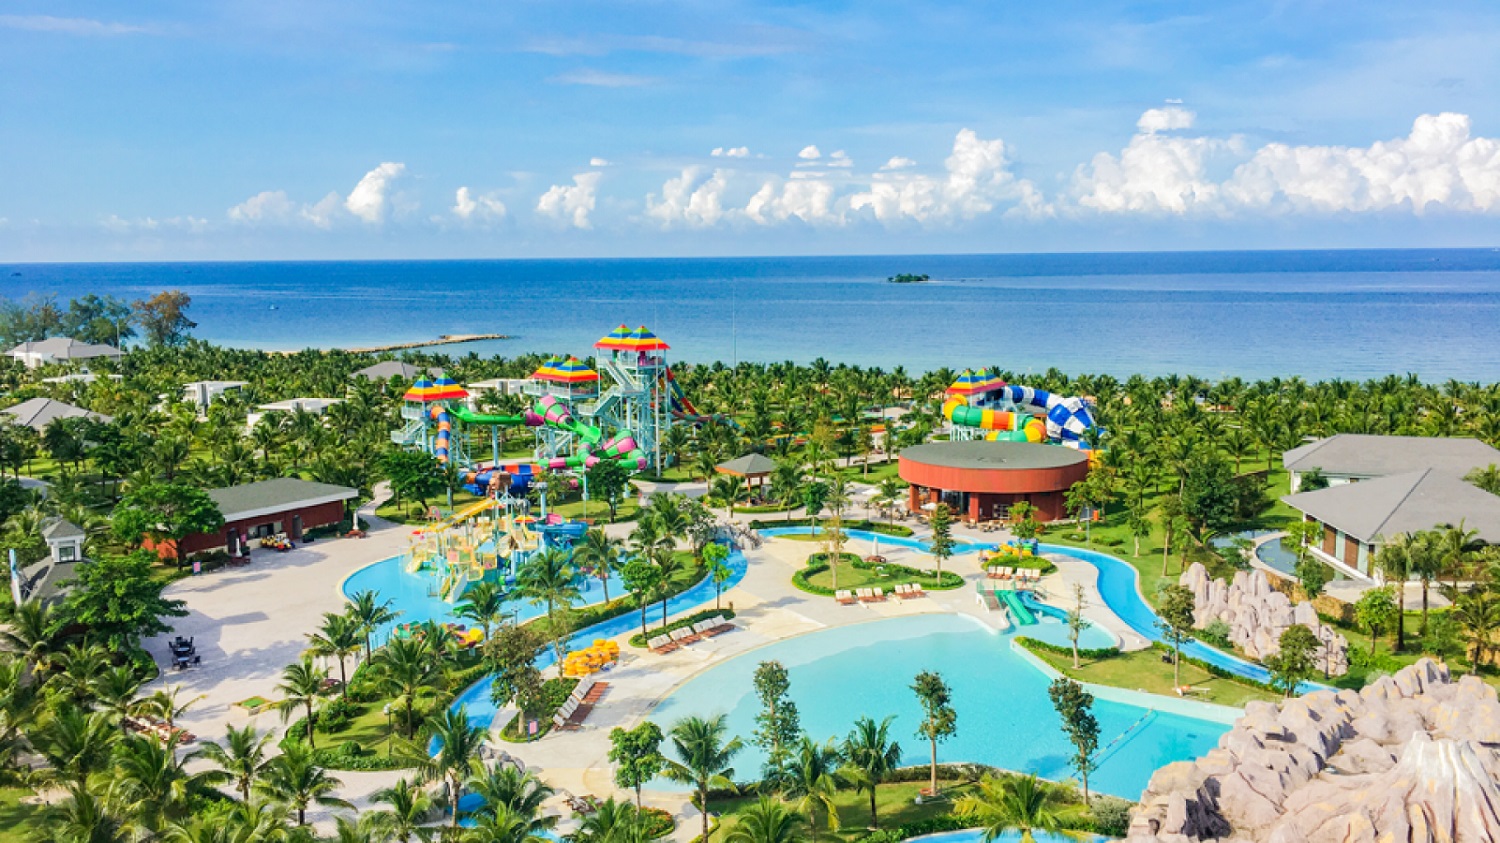 VinOasis Phú Quốc - Resort Phú Quốc 5 sao cό cȏng viên nước riêng biệt